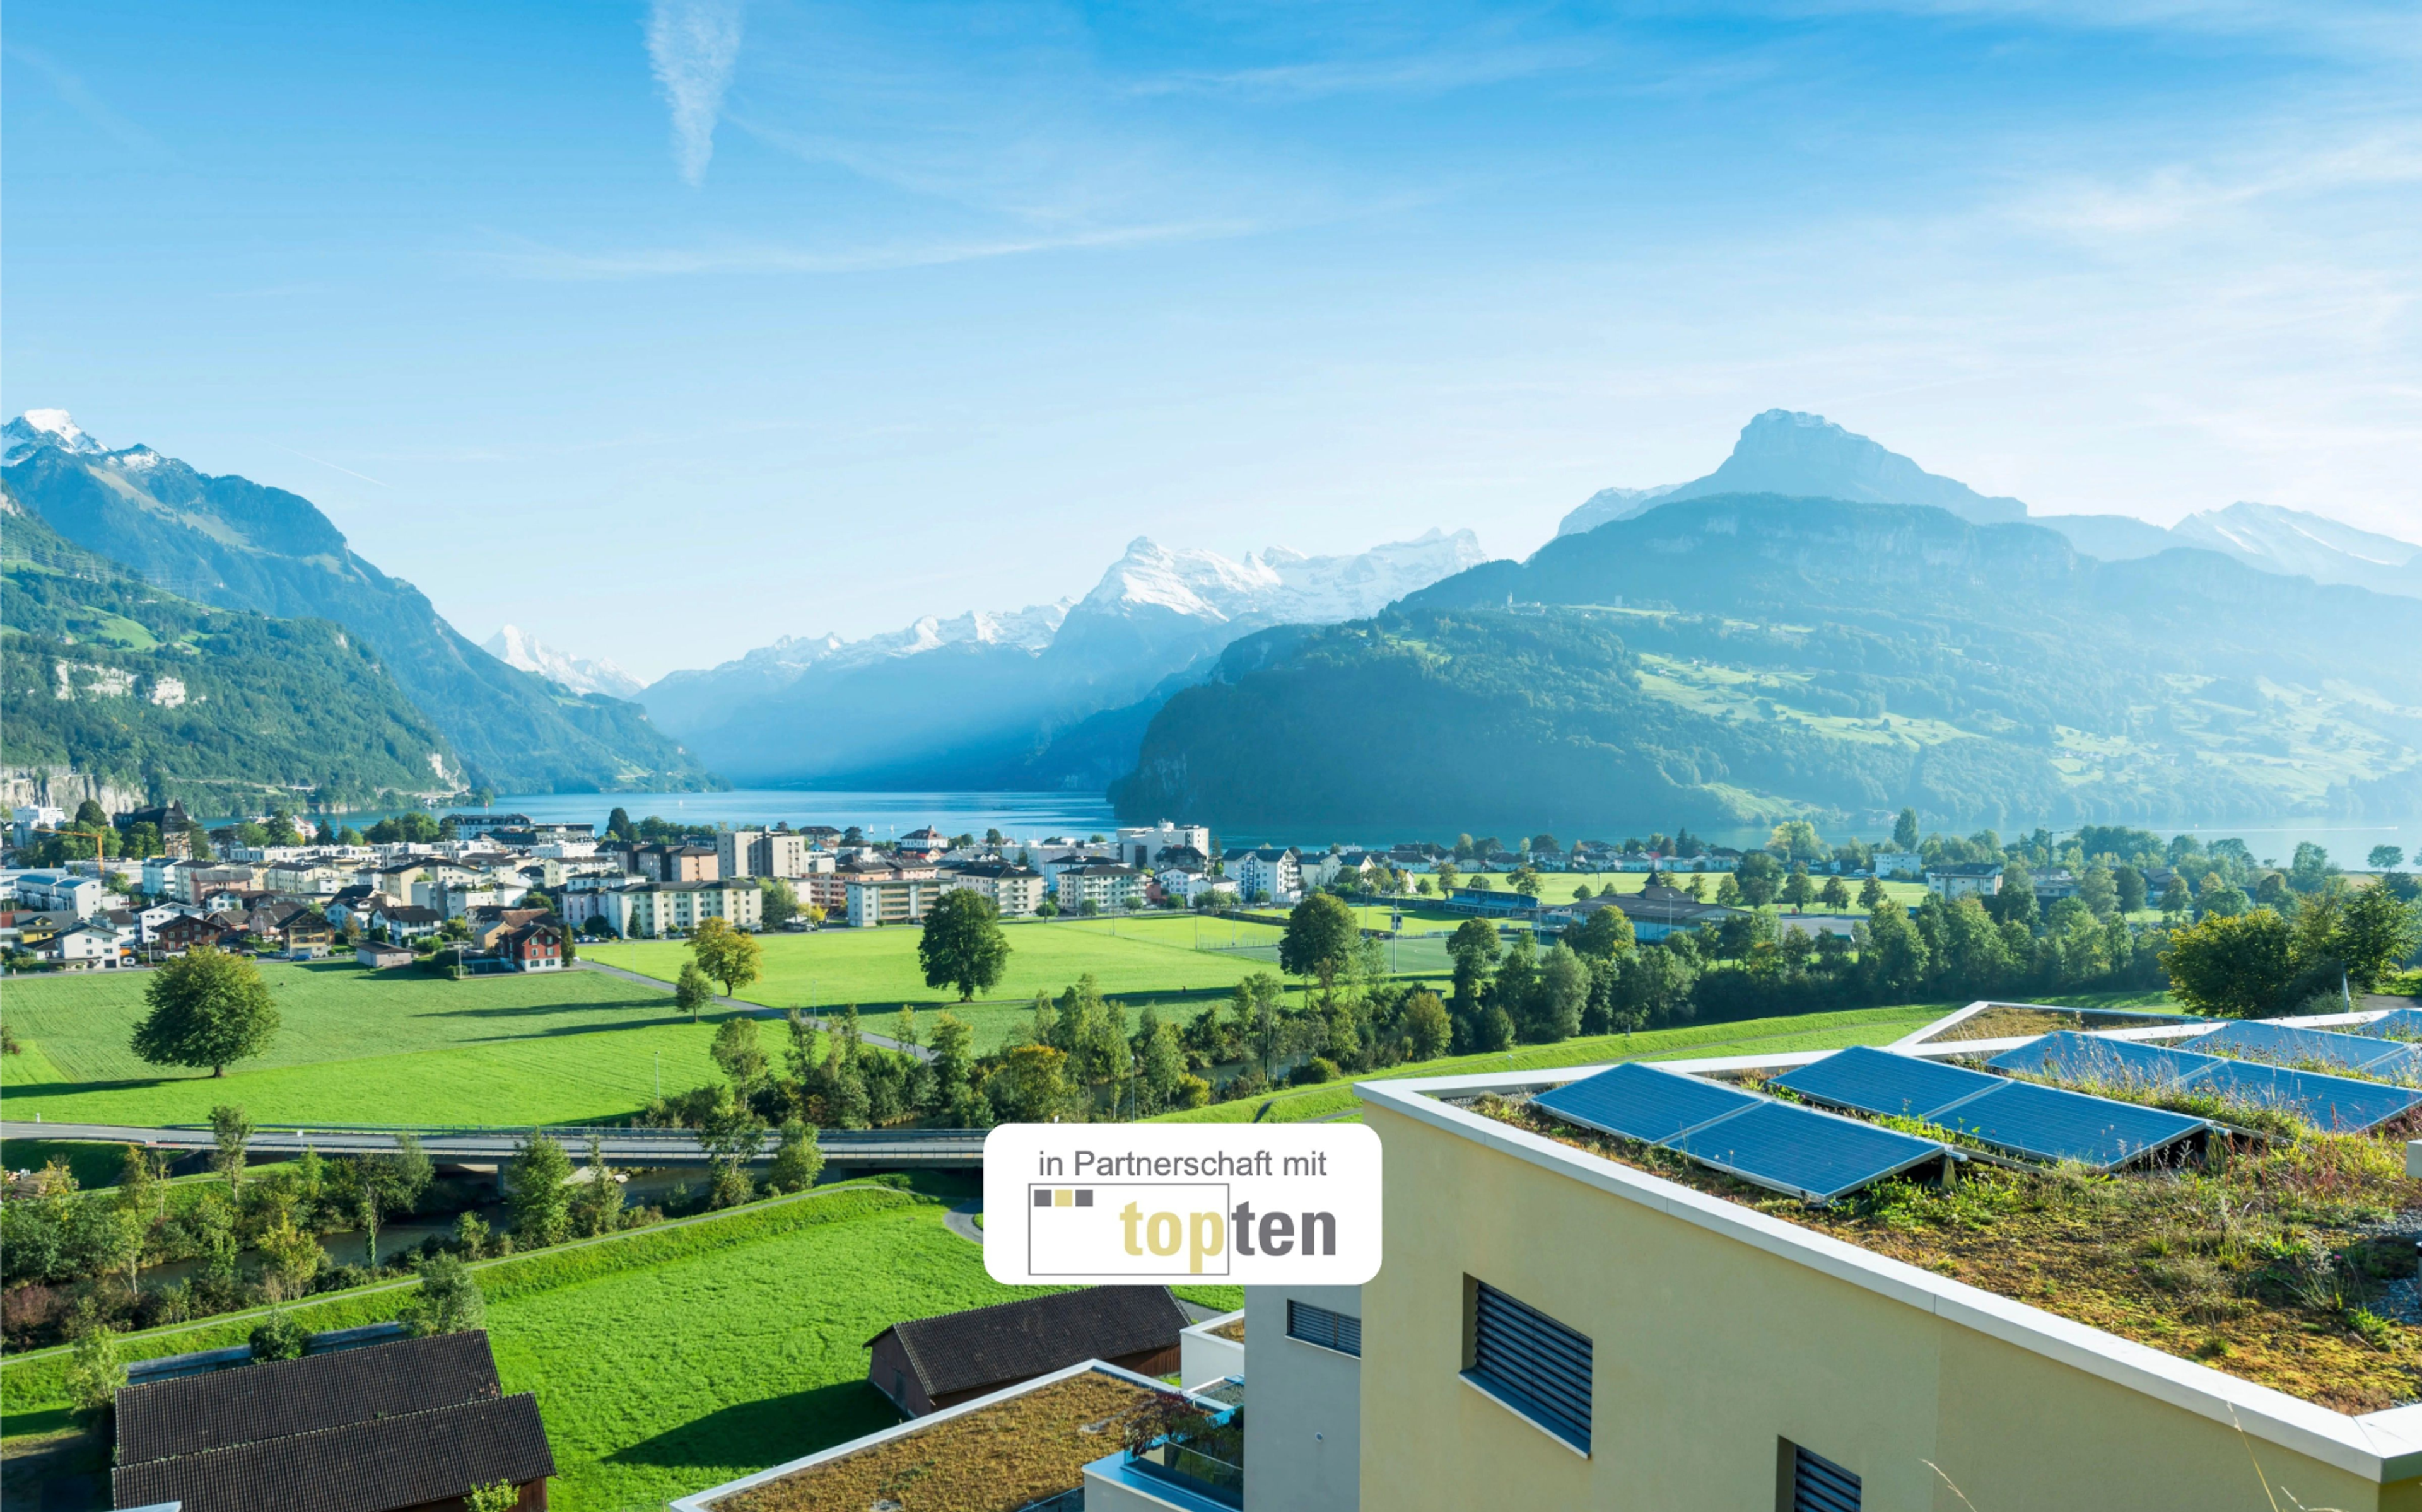 Gebäude mit Photovoltaikanlage mit schweizer Landschaft im Hintergrund